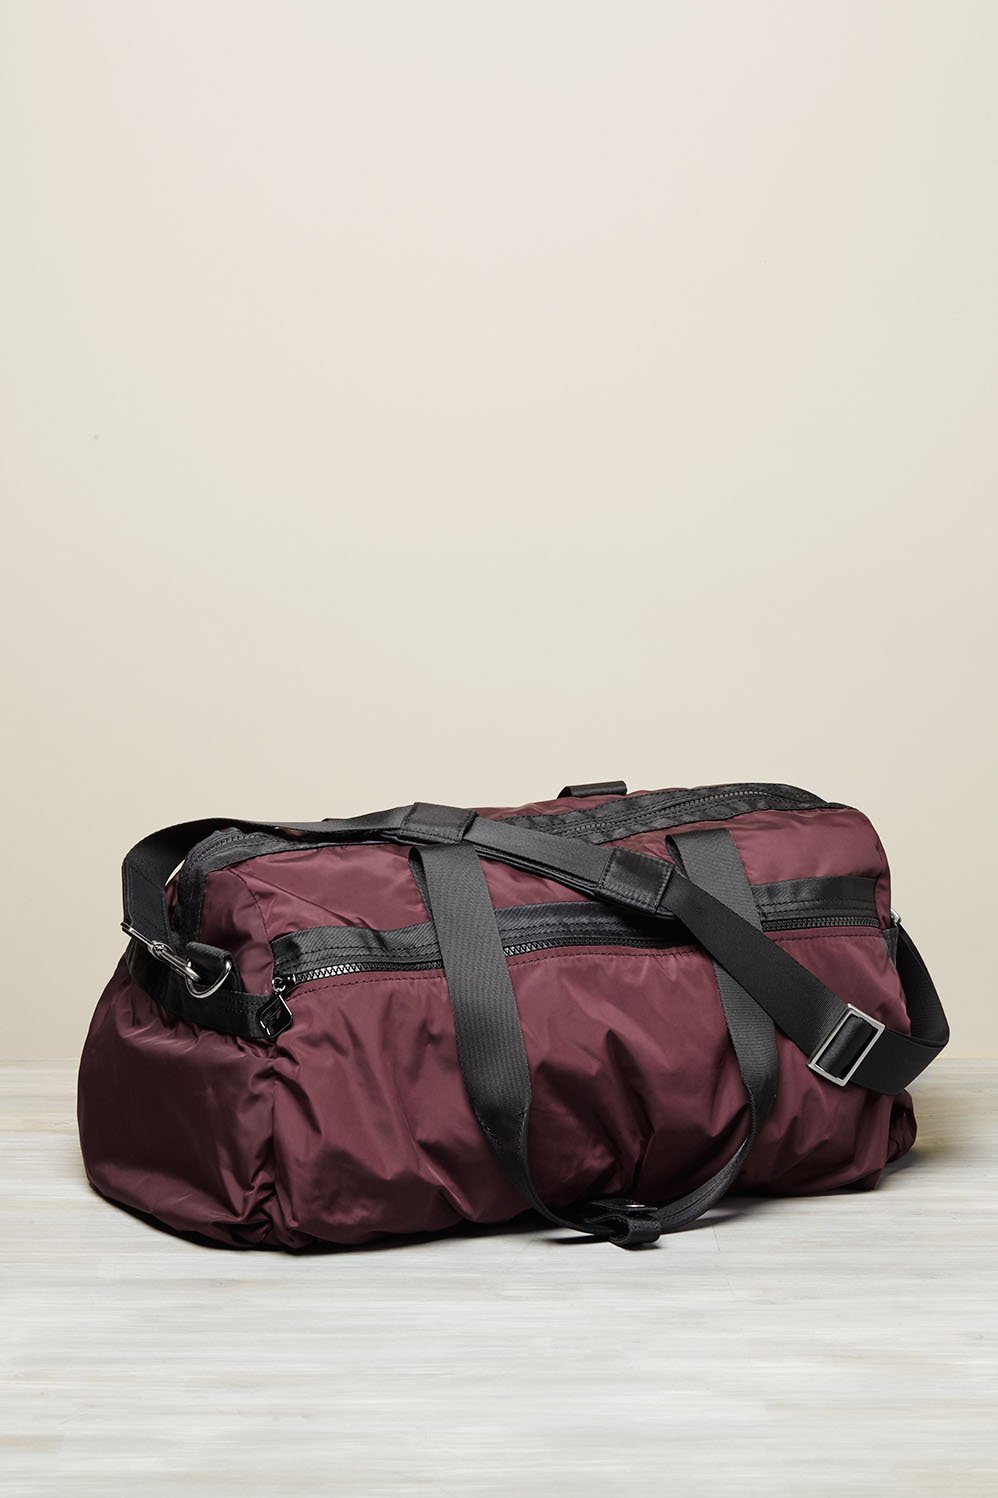 Yoga Mat Carrier Strap Shoulder Sling Adjustable Gym Tote Carry Exercise Bag G 